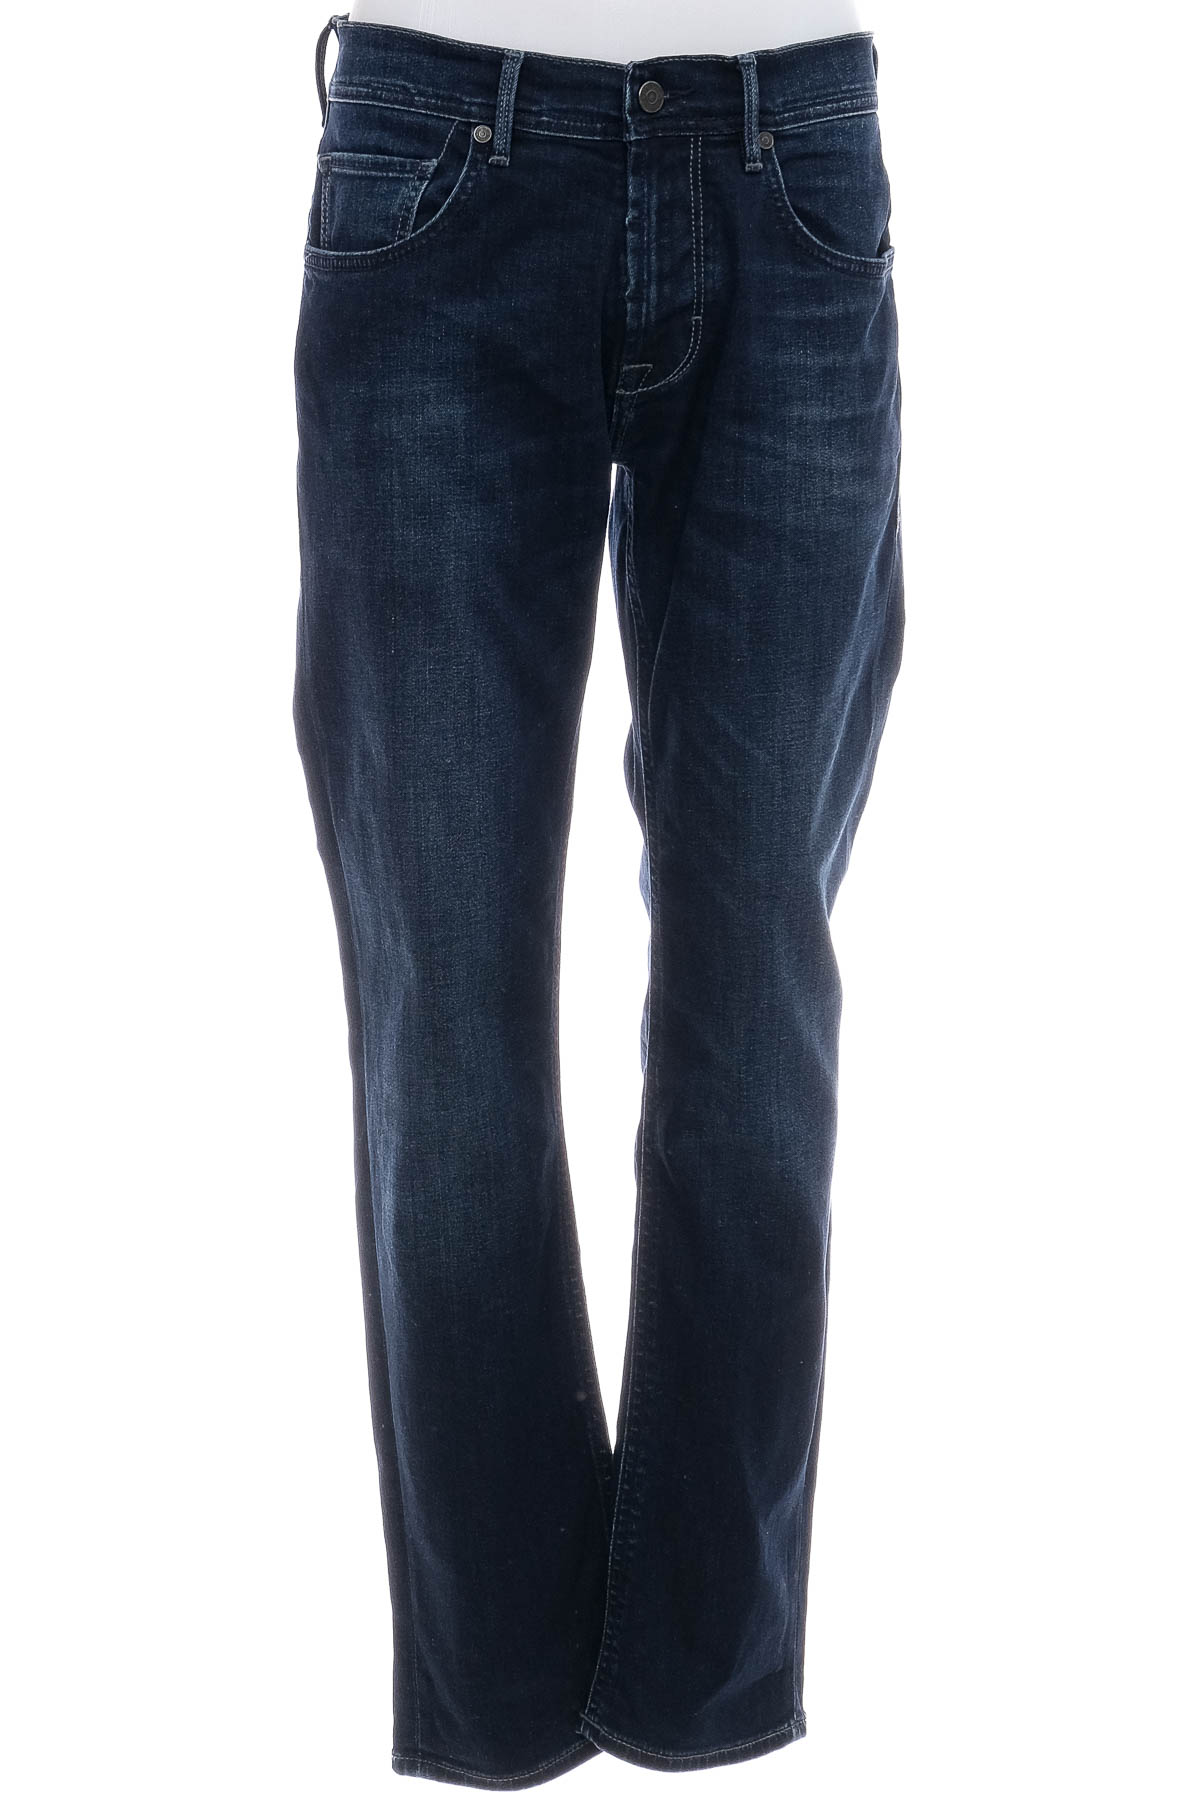 Jeans pentru bărbăți - Baldessarini - 0